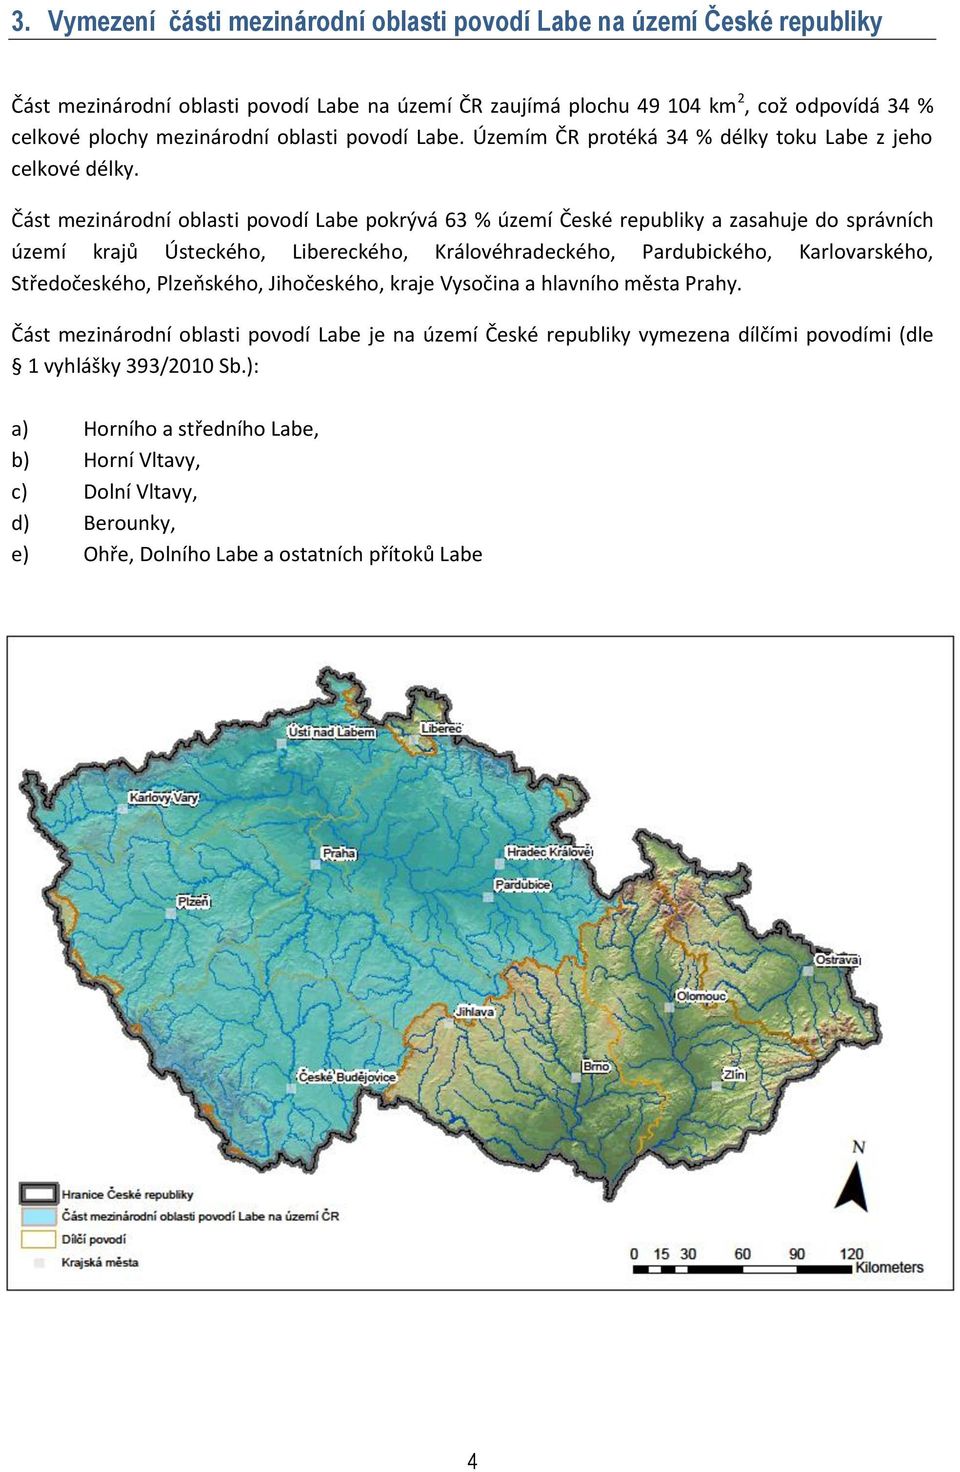 Část mezinárodní oblasti povodí Labe pokrývá 63 % území České republiky a zasahuje do správních území krajů Ústeckého, Libereckého, Královéhradeckého, Pardubického, Karlovarského, Středočeského,